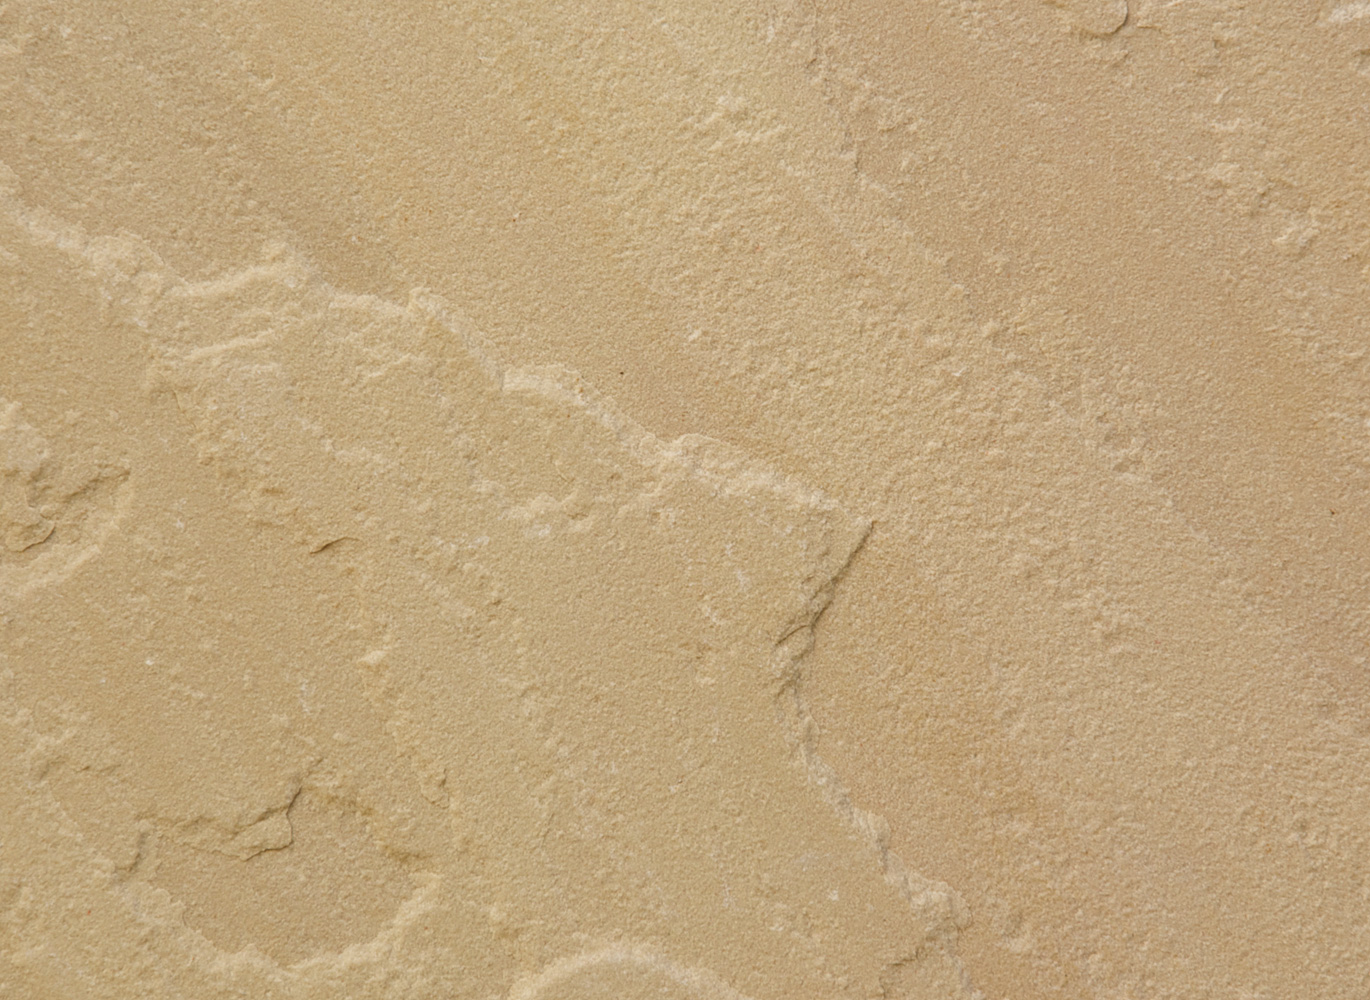 Hasított, bányanyers felületű sárgás színű Modak indiai homokkő